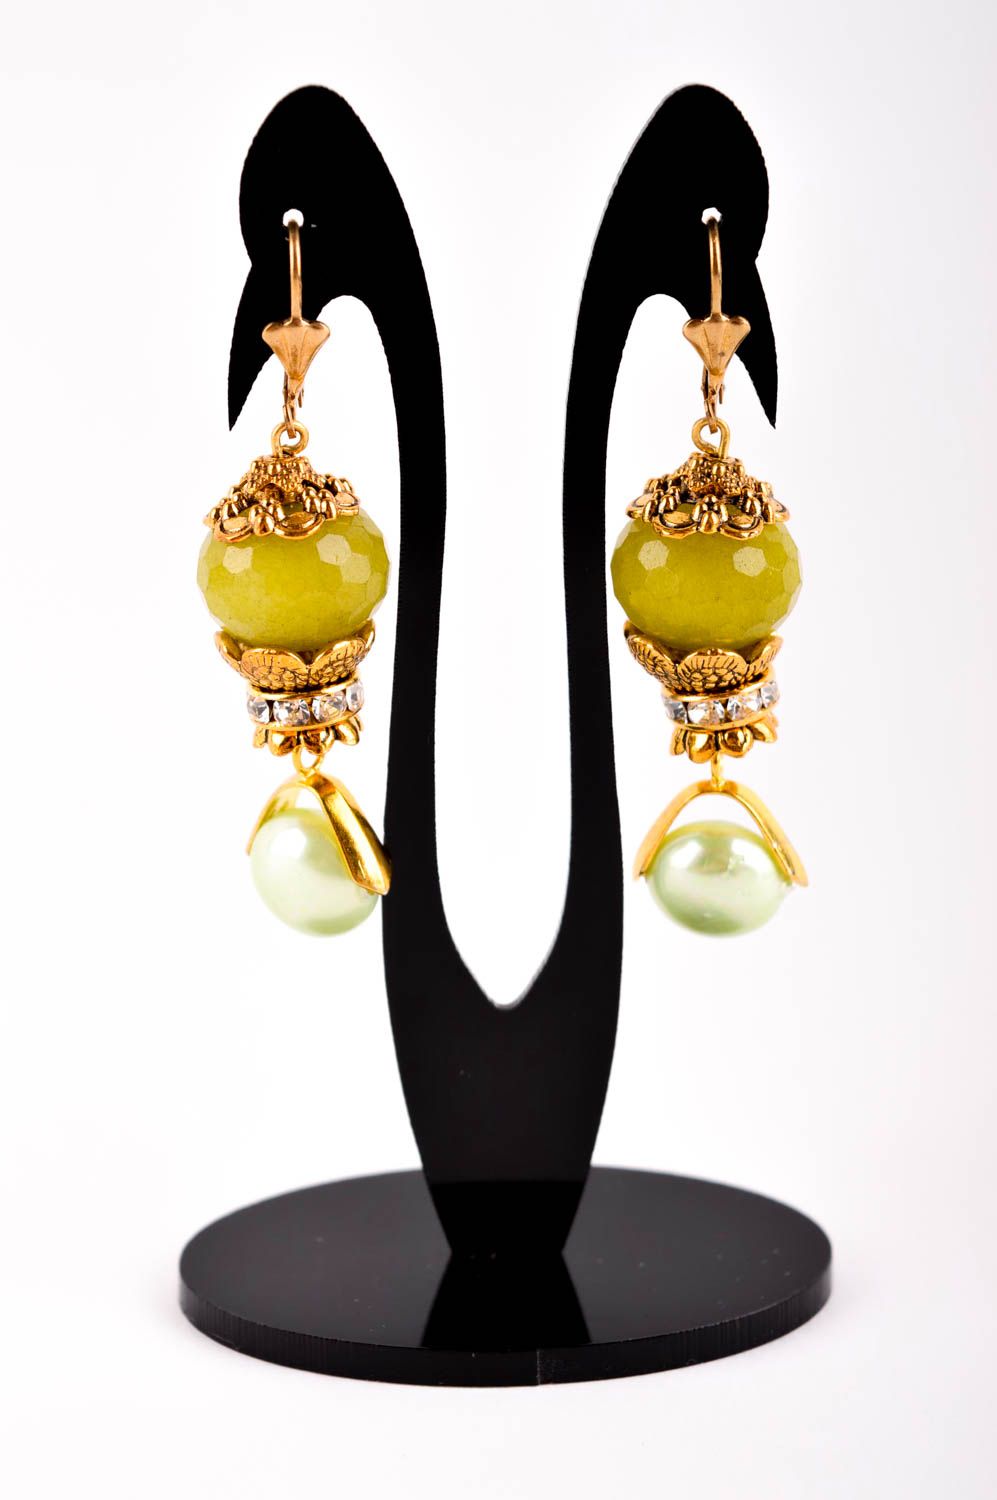 Handmade earrings designer earrings with charms stone earrings for women photo 2